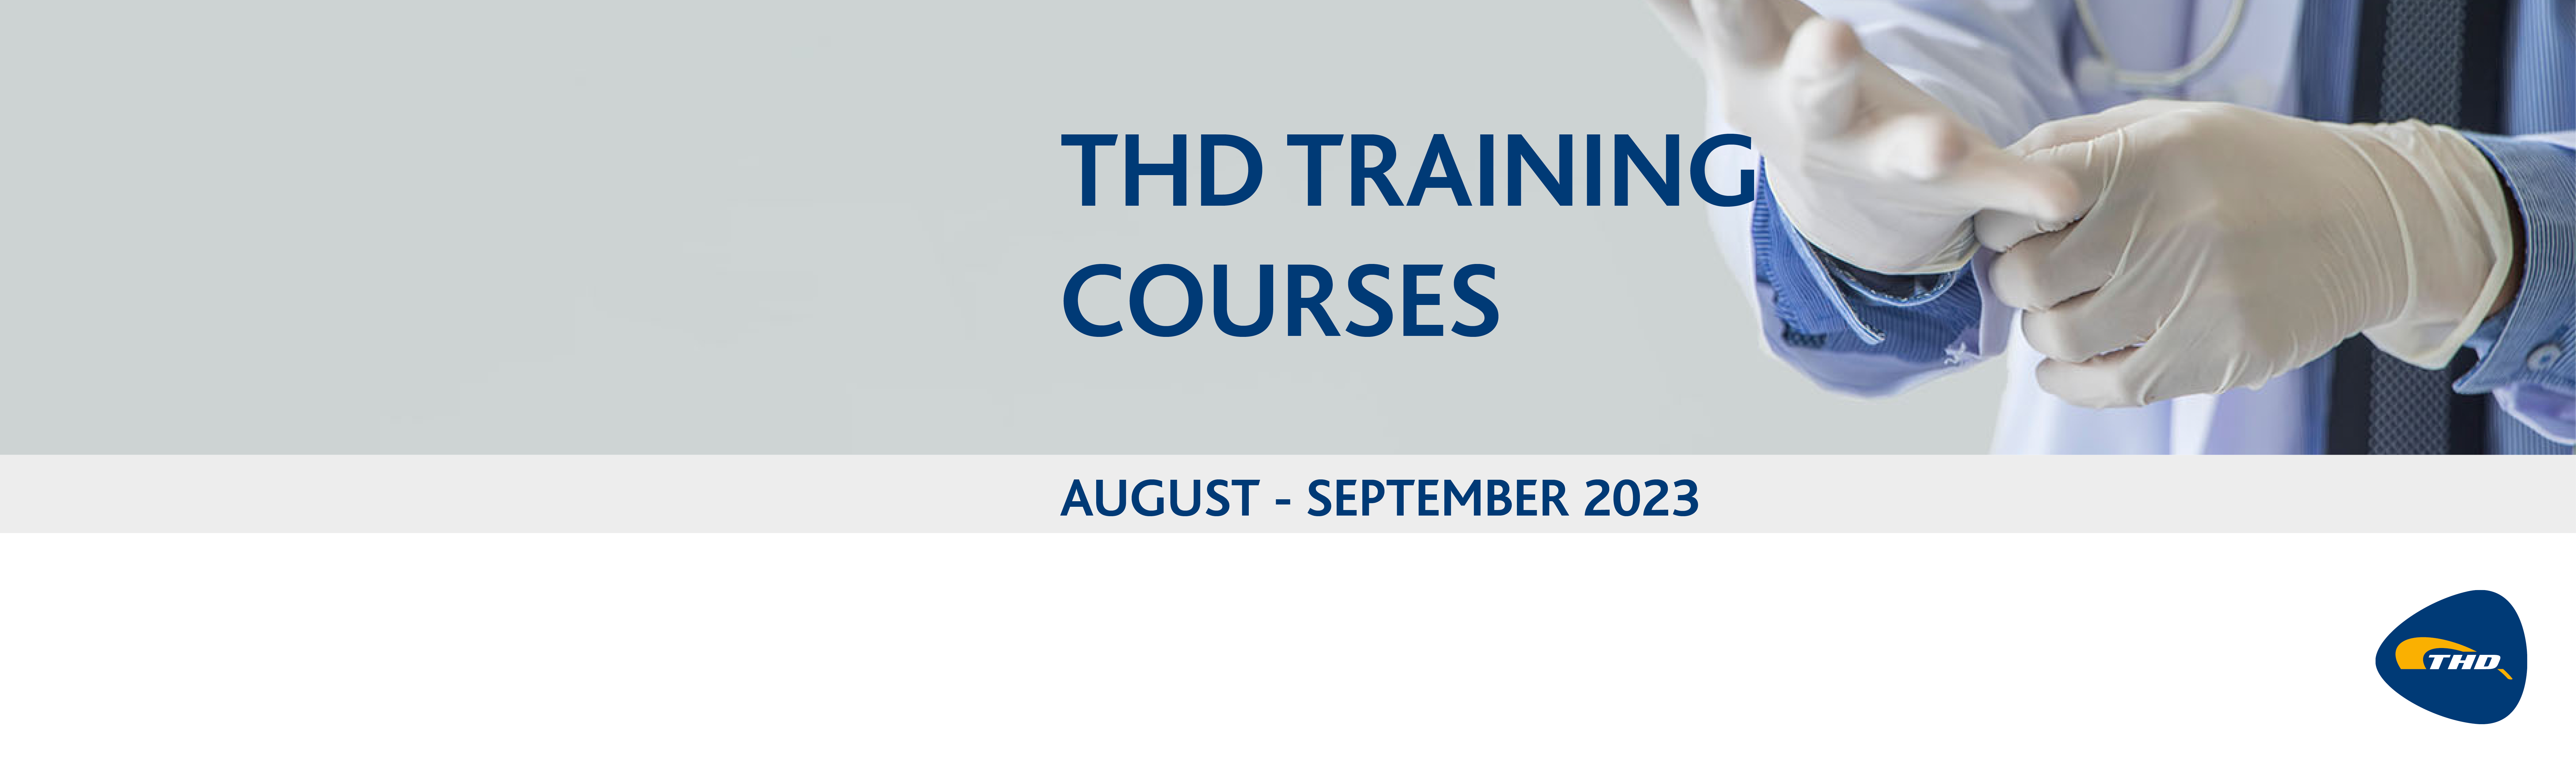 THD Webinars in August-September 2023